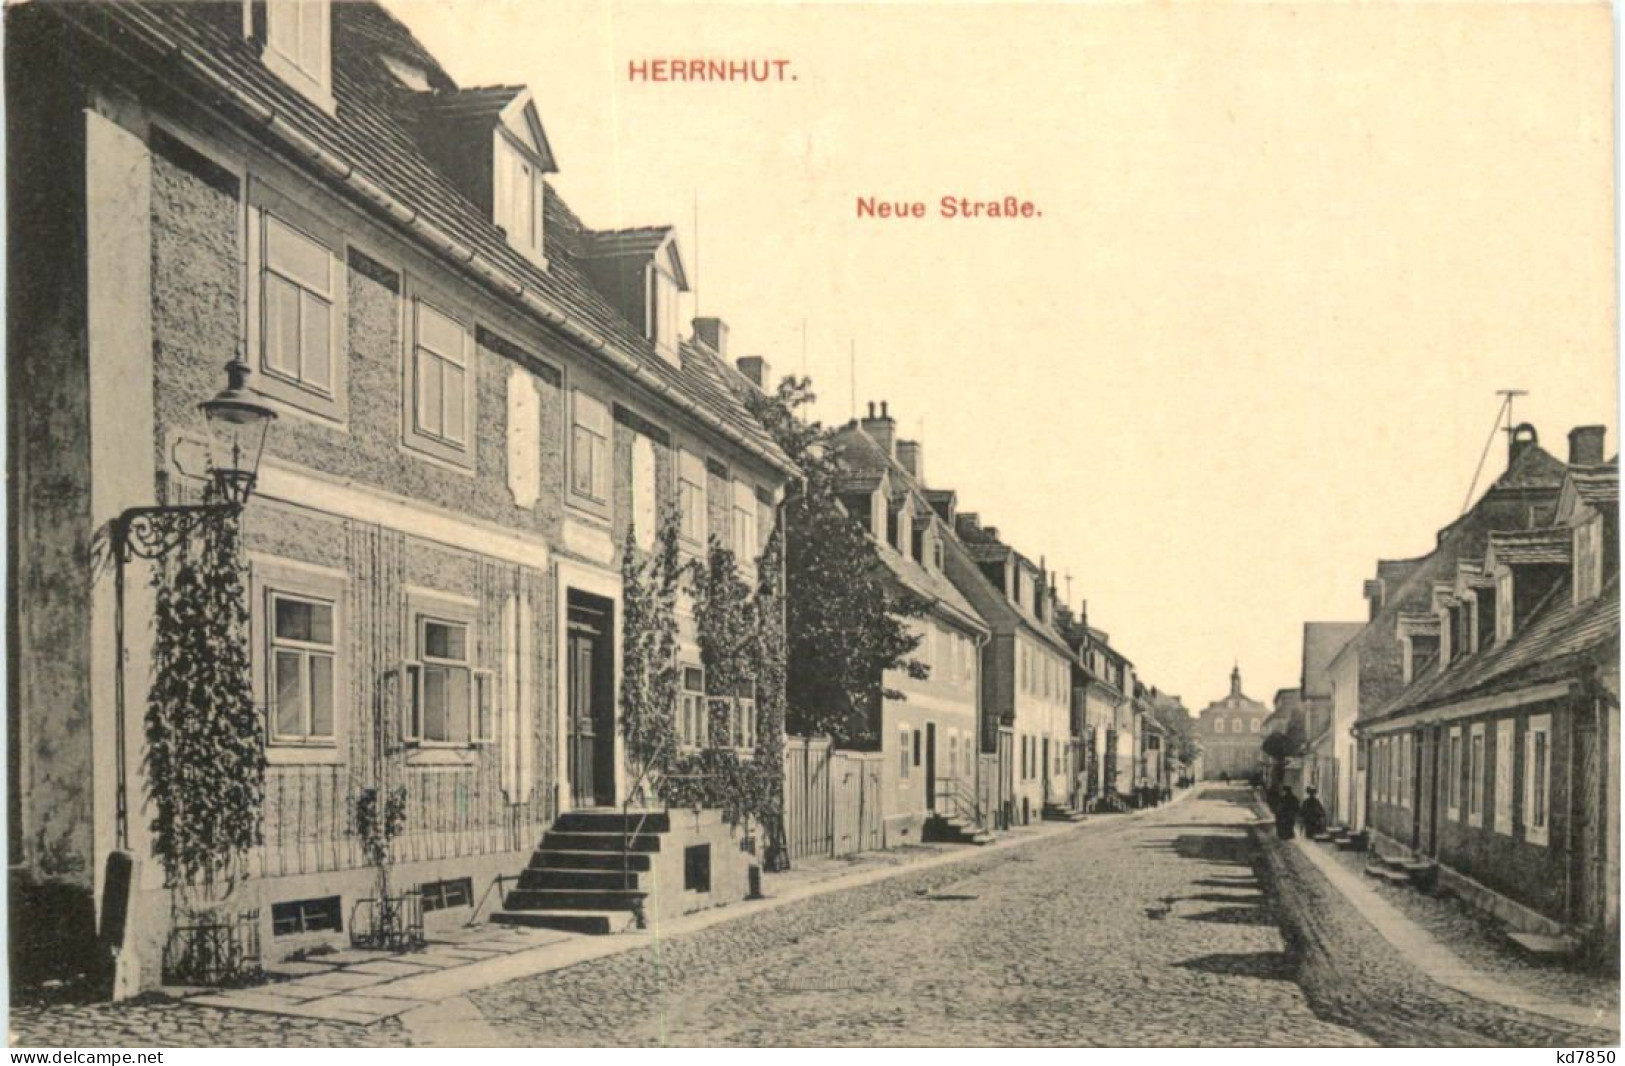 Herrnhut In Sachsen - Neue Straße - Herrnhut